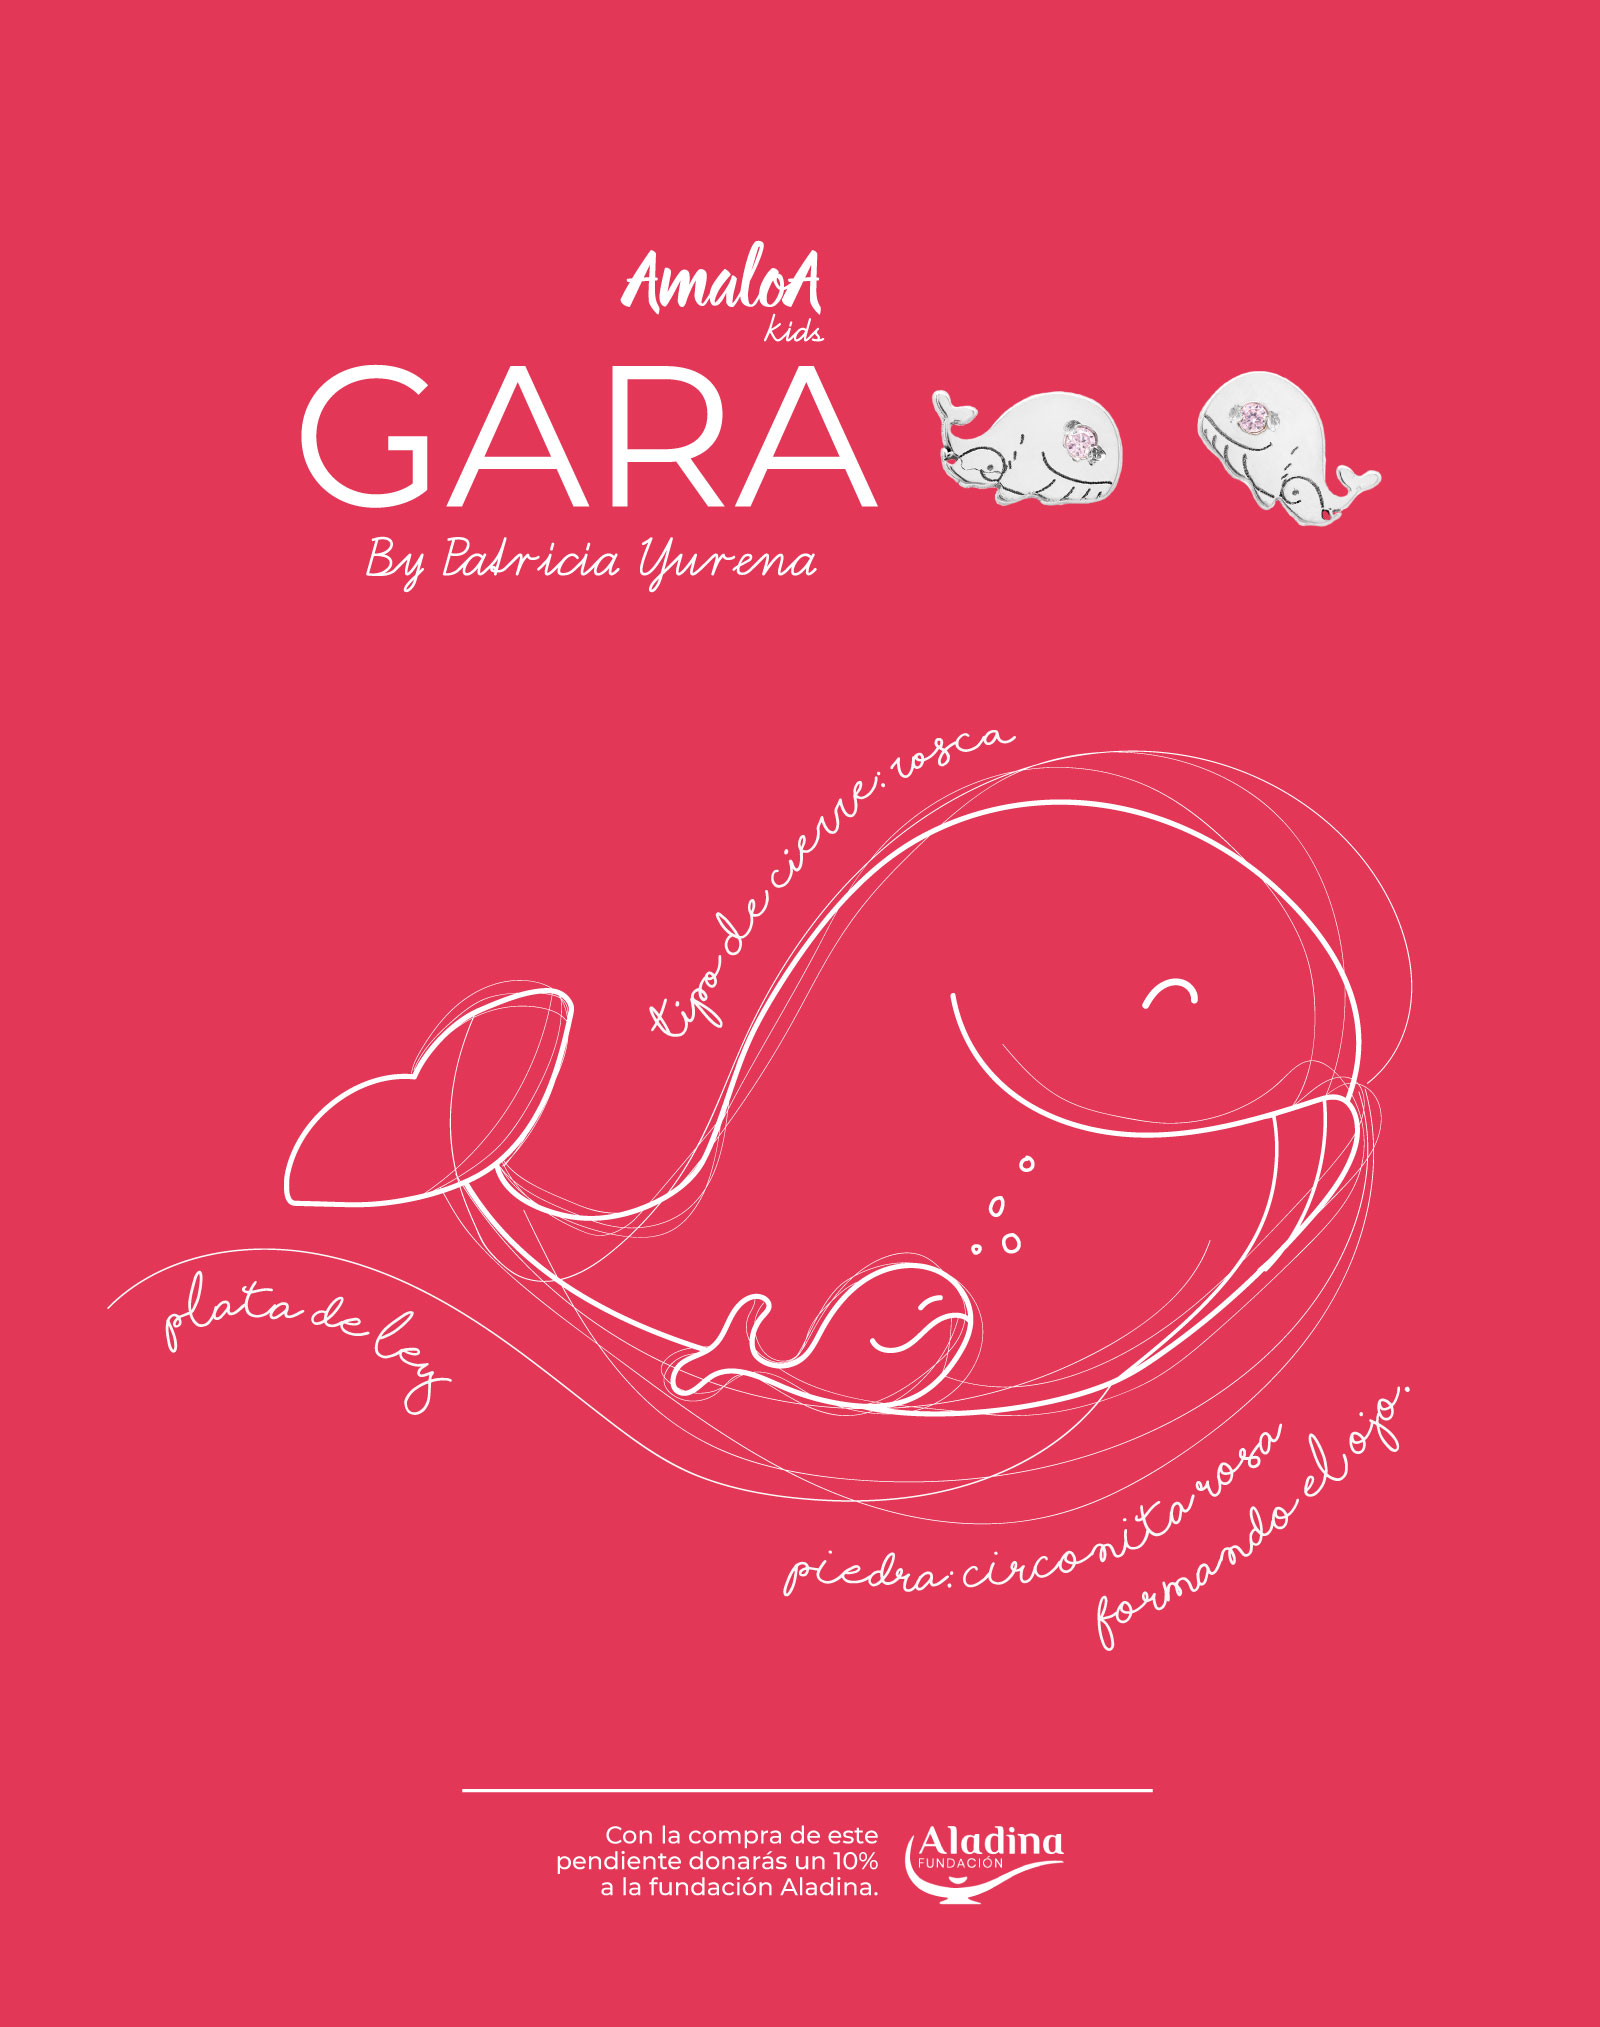 Banner promocional de los pendientes de plata para niña de la marca AmaloA, modelo Gara